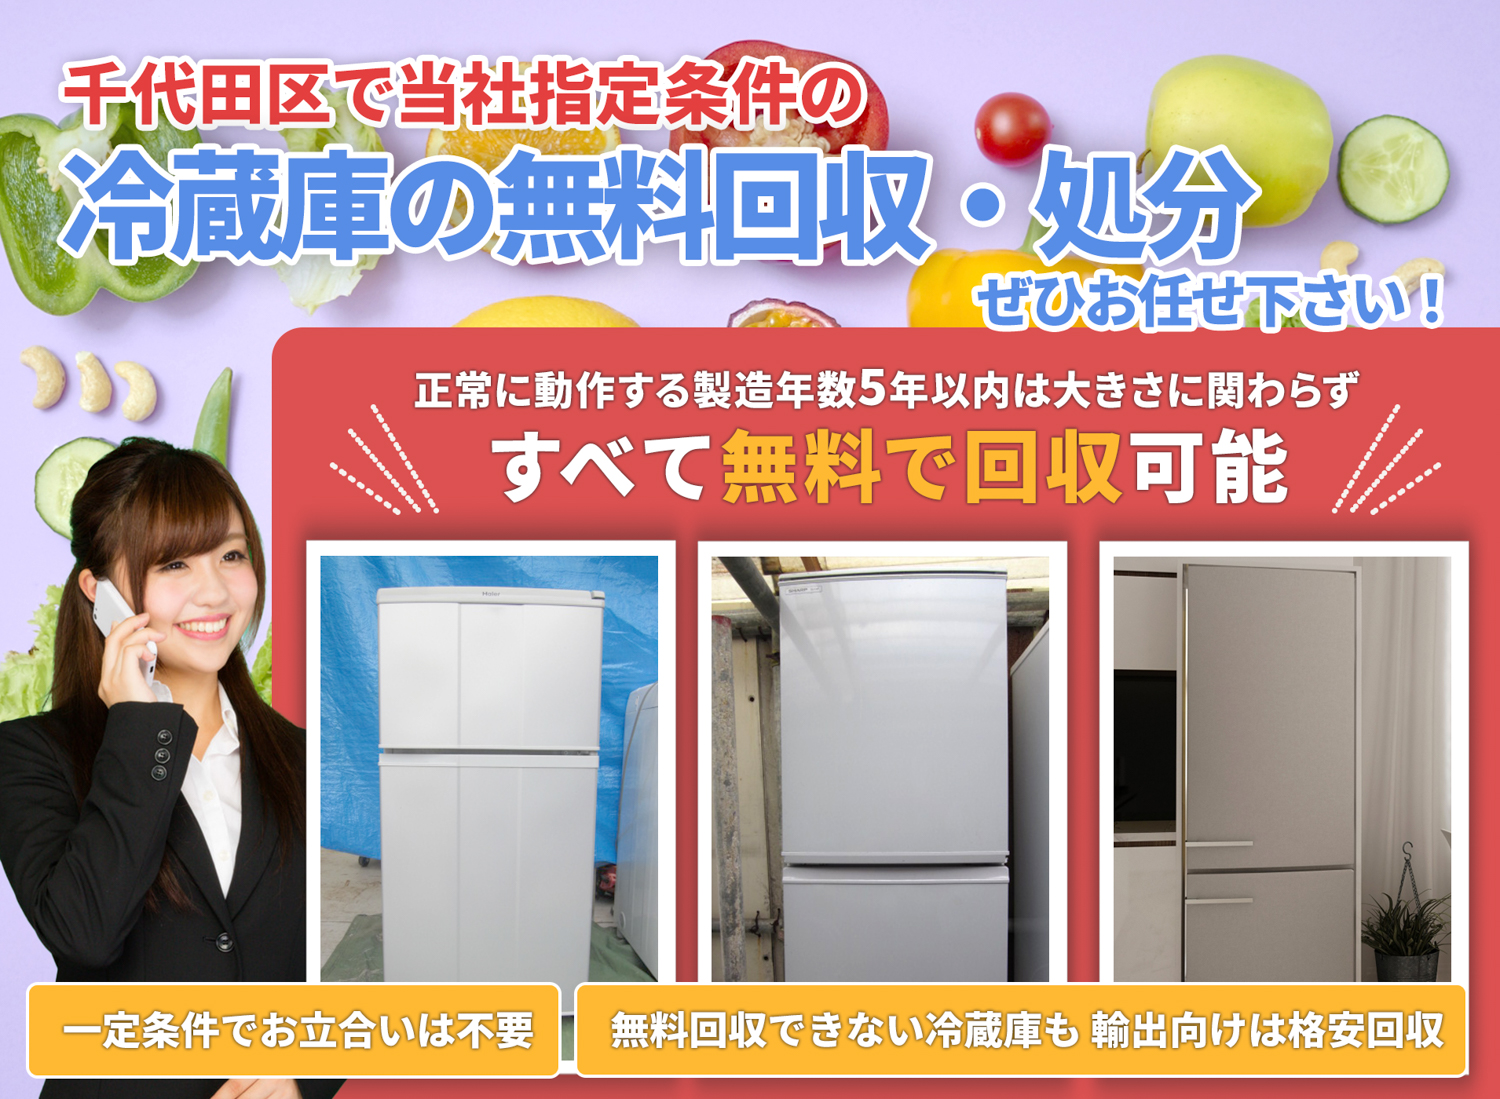 千代田区で「安心と丁寧」を両立する冷蔵庫無料回収処分隊の冷蔵庫無料回収サービス